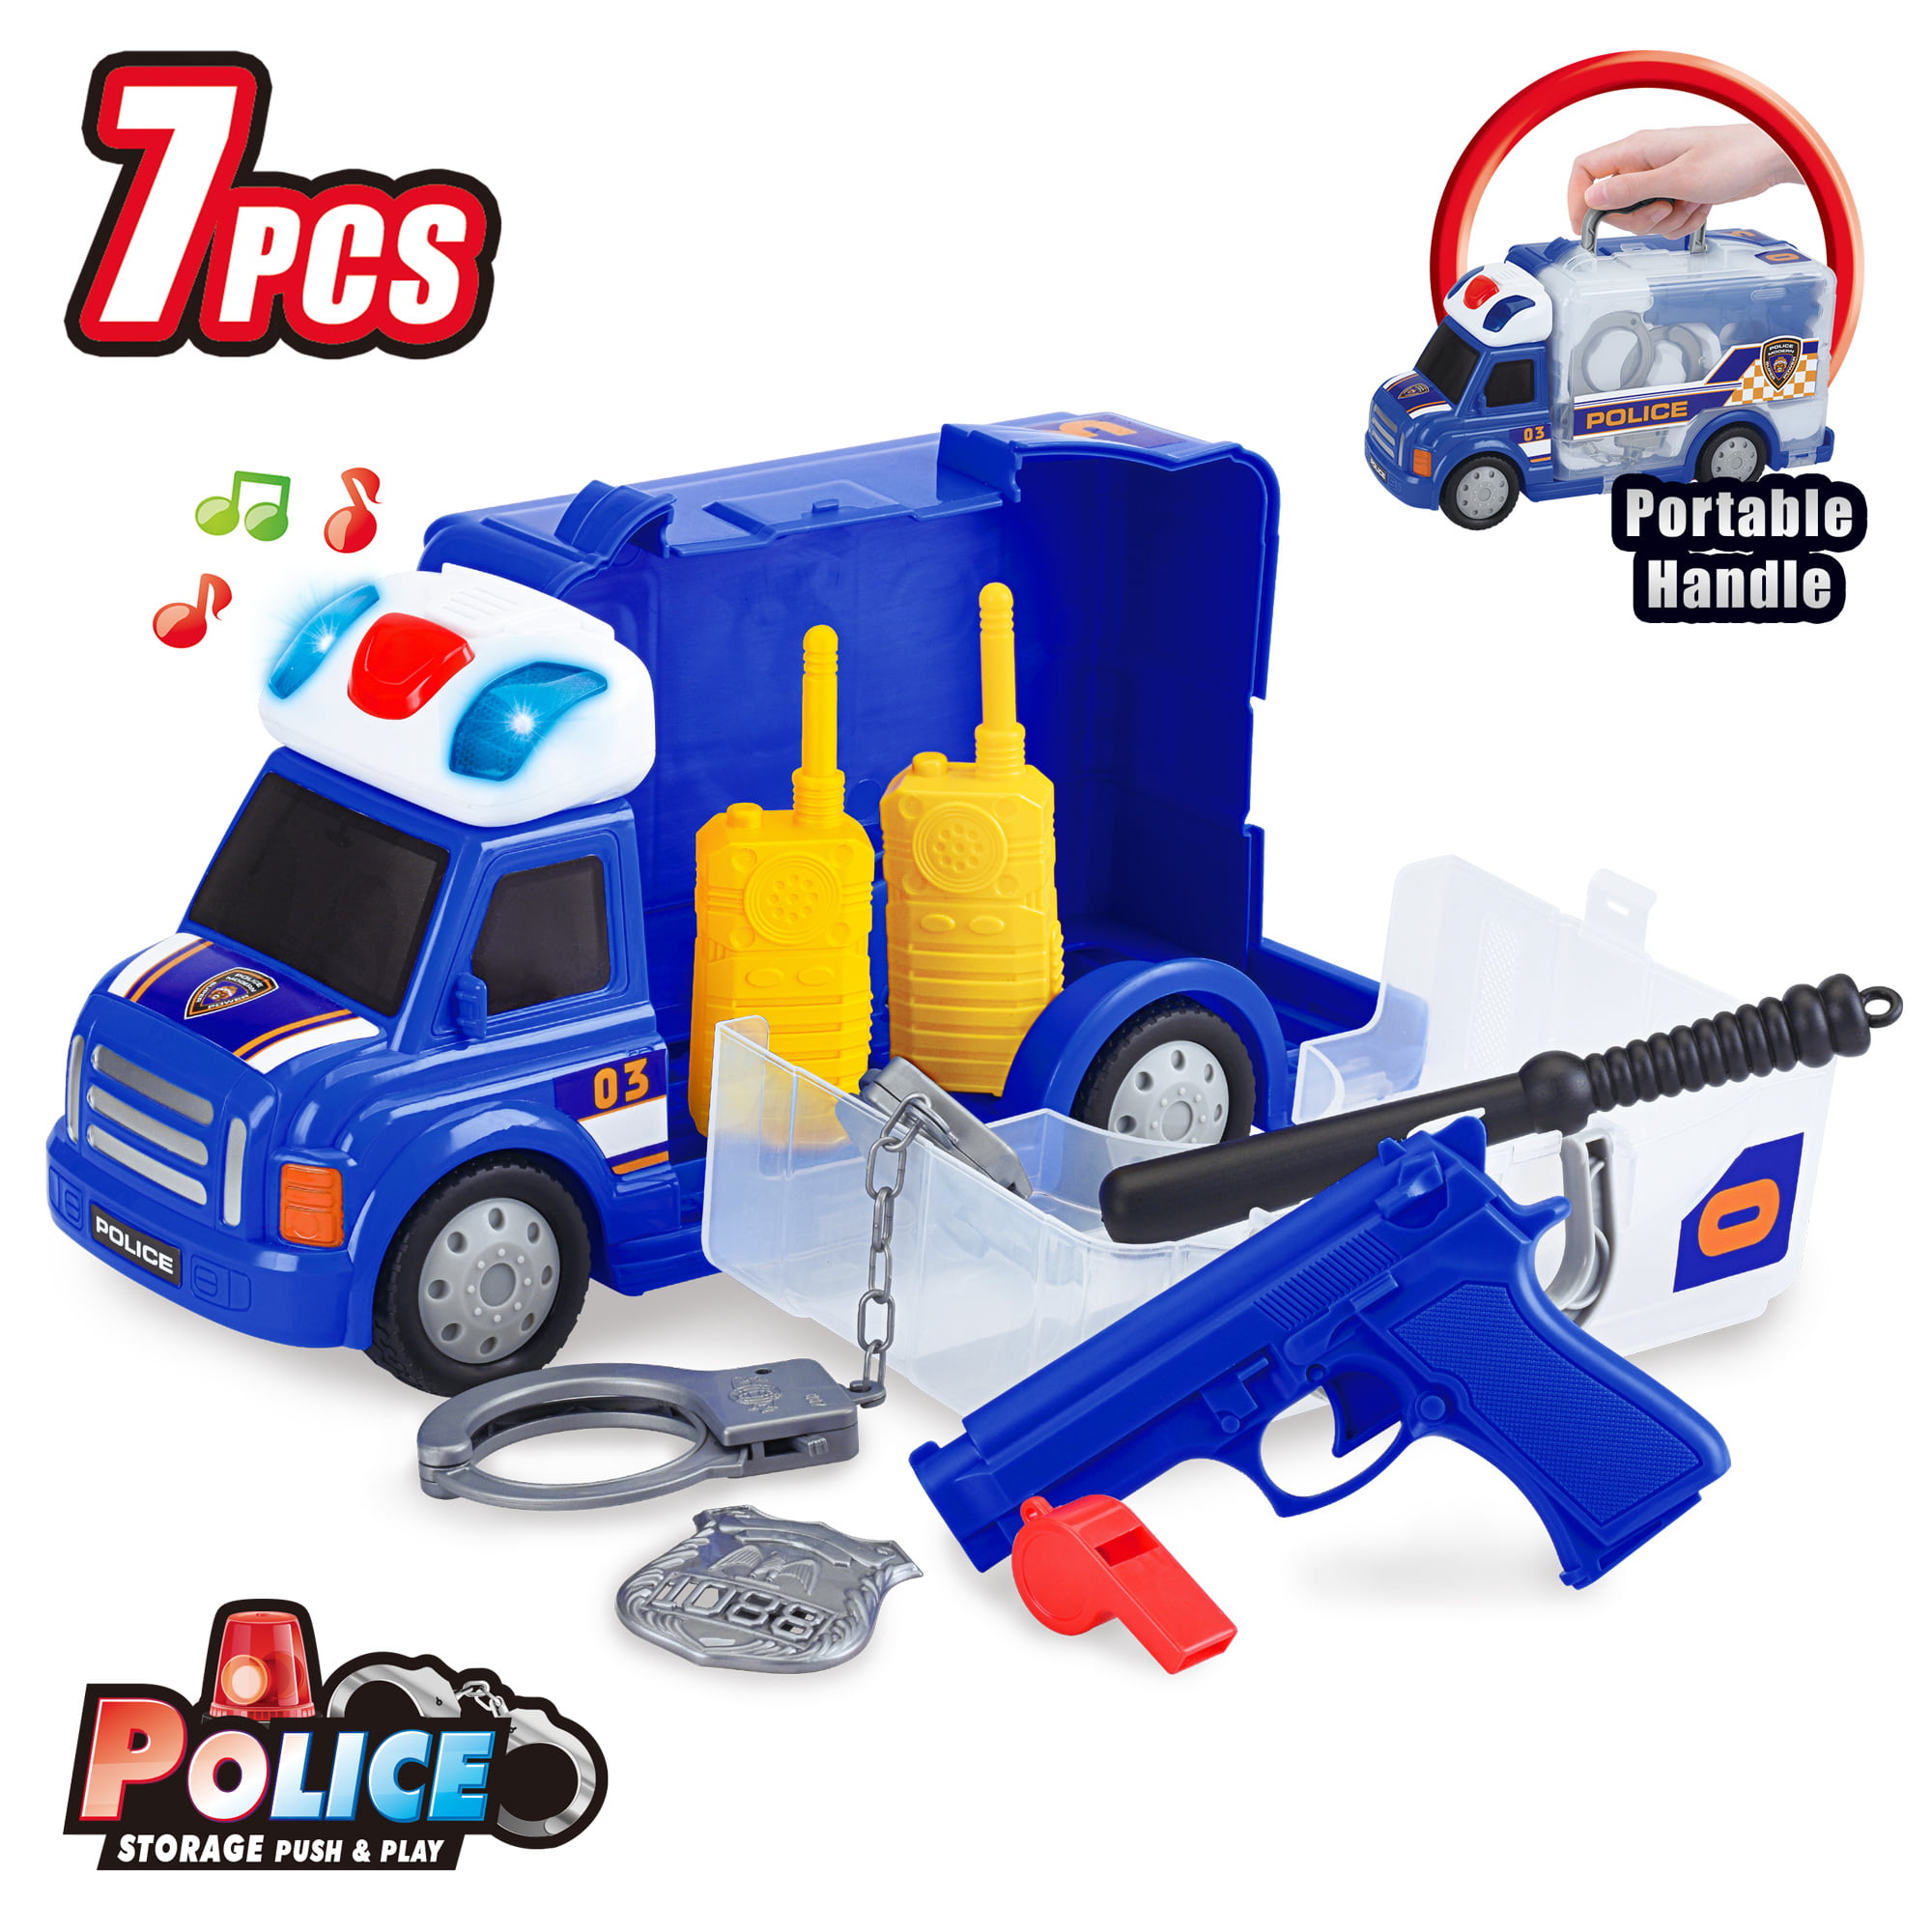 gun toy set